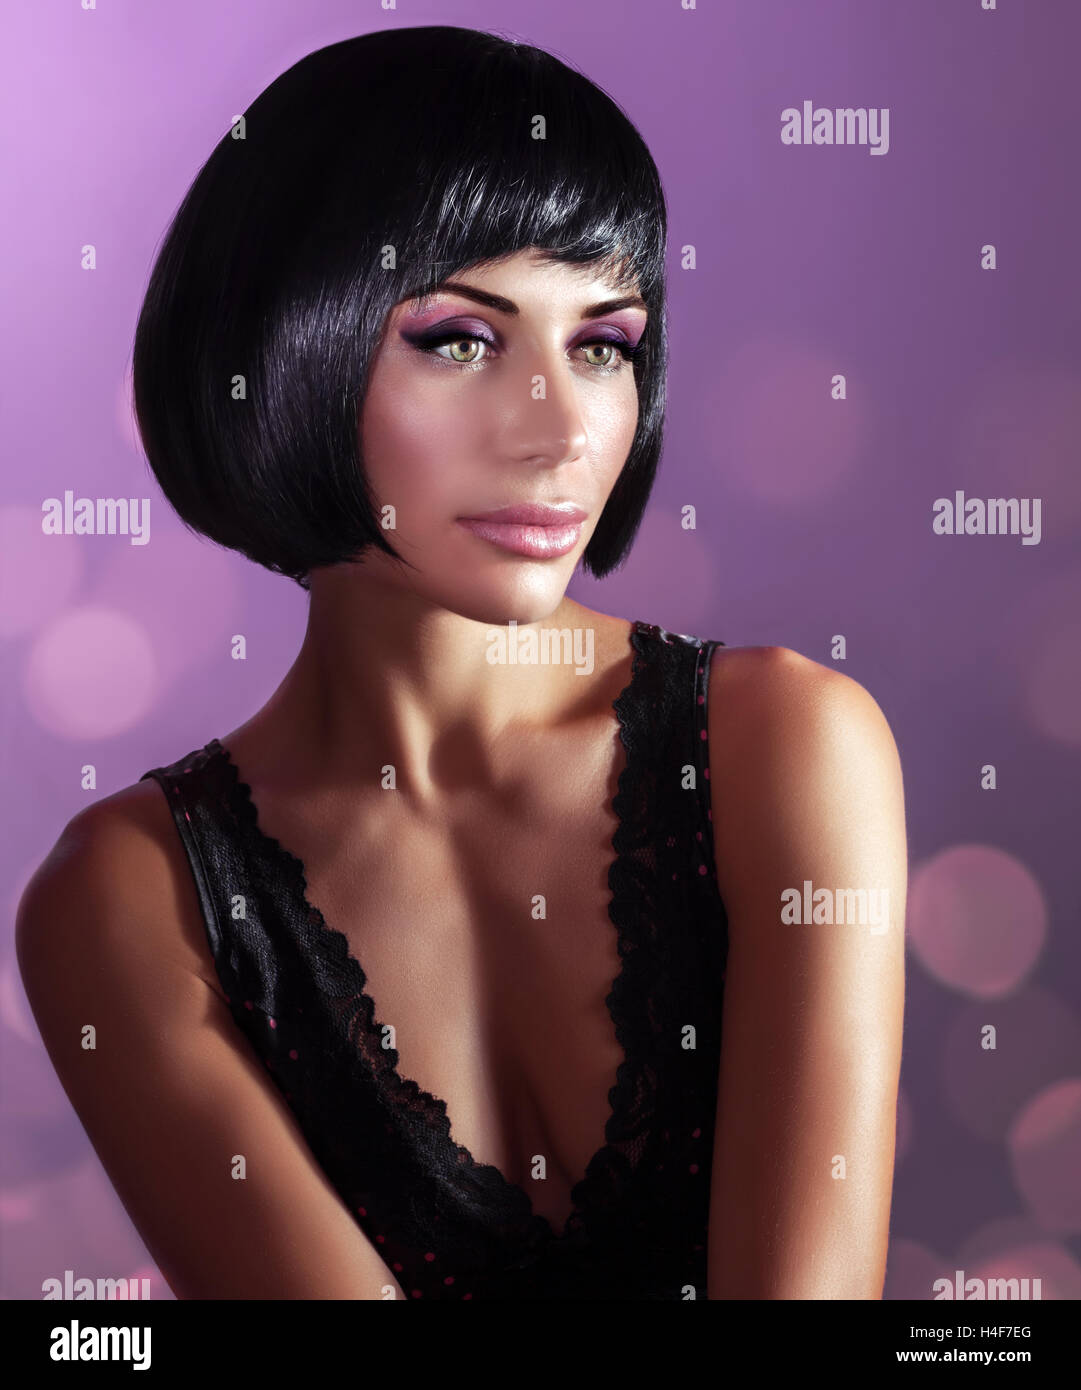 Retrato de una hermosa mujer con cabello y maquillaje perfecto sobre fondo púrpura, moda estilo retro photo shoot Foto de stock